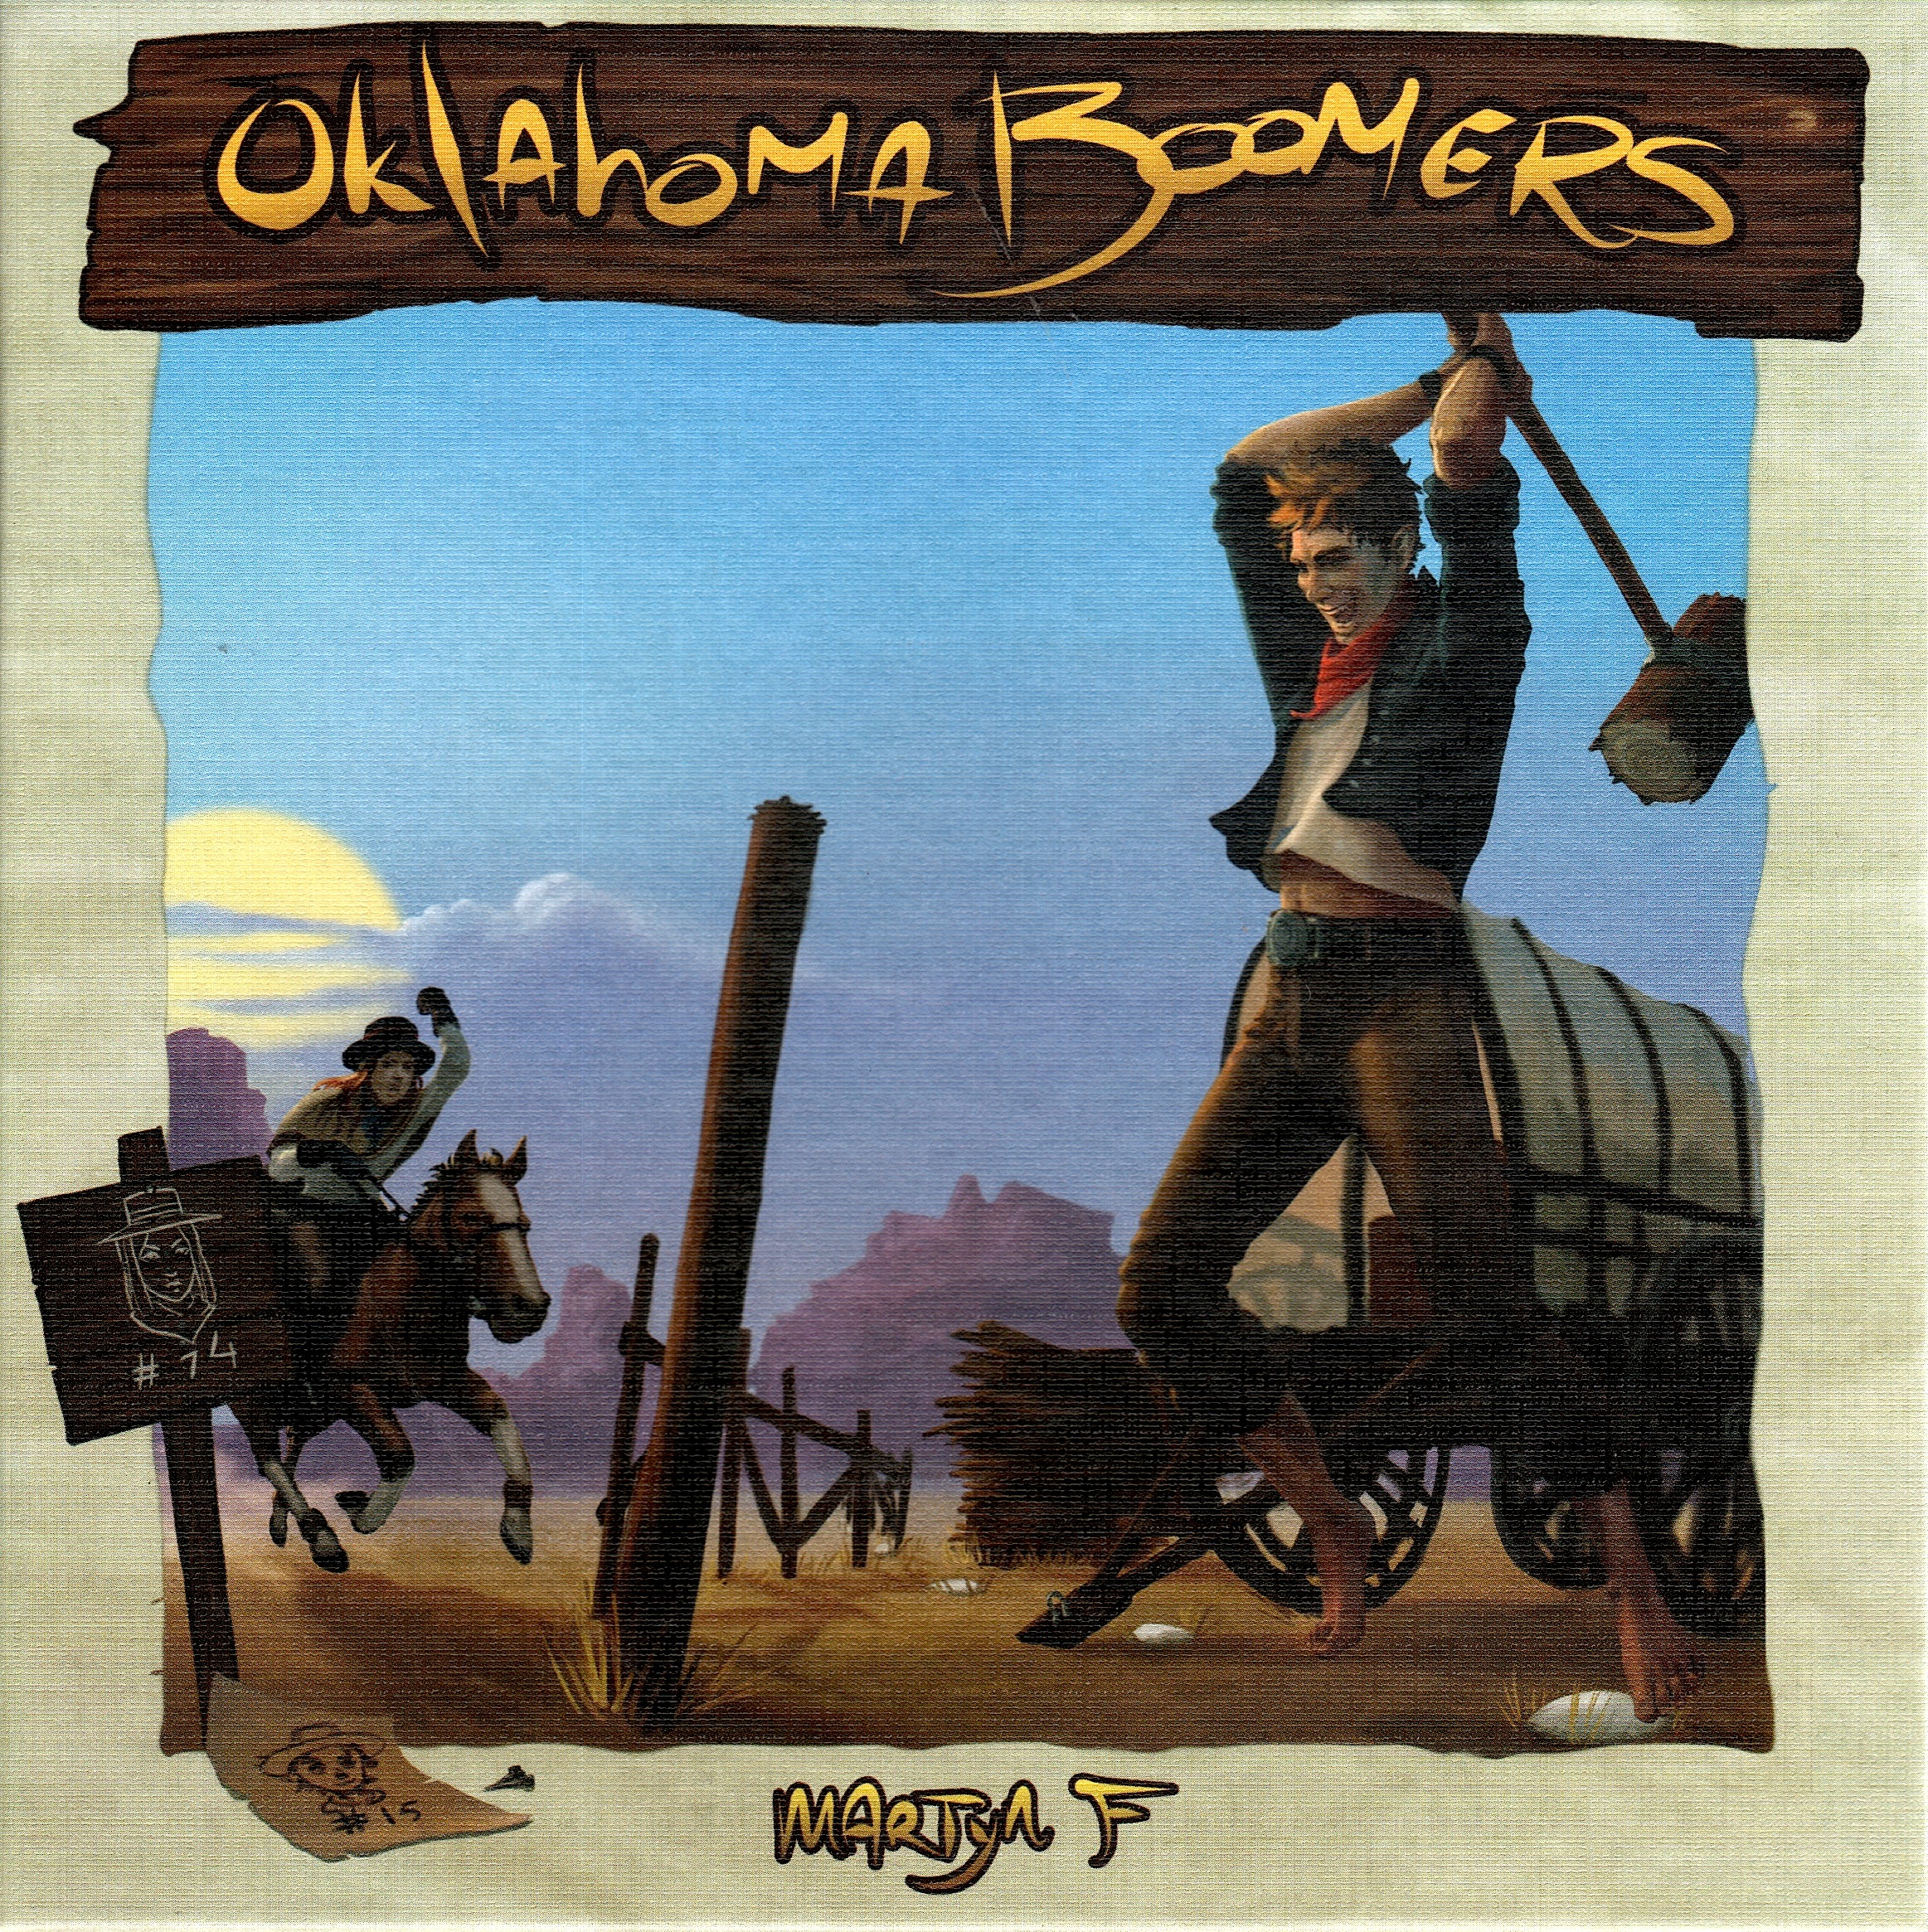 Oklahoma Boomers